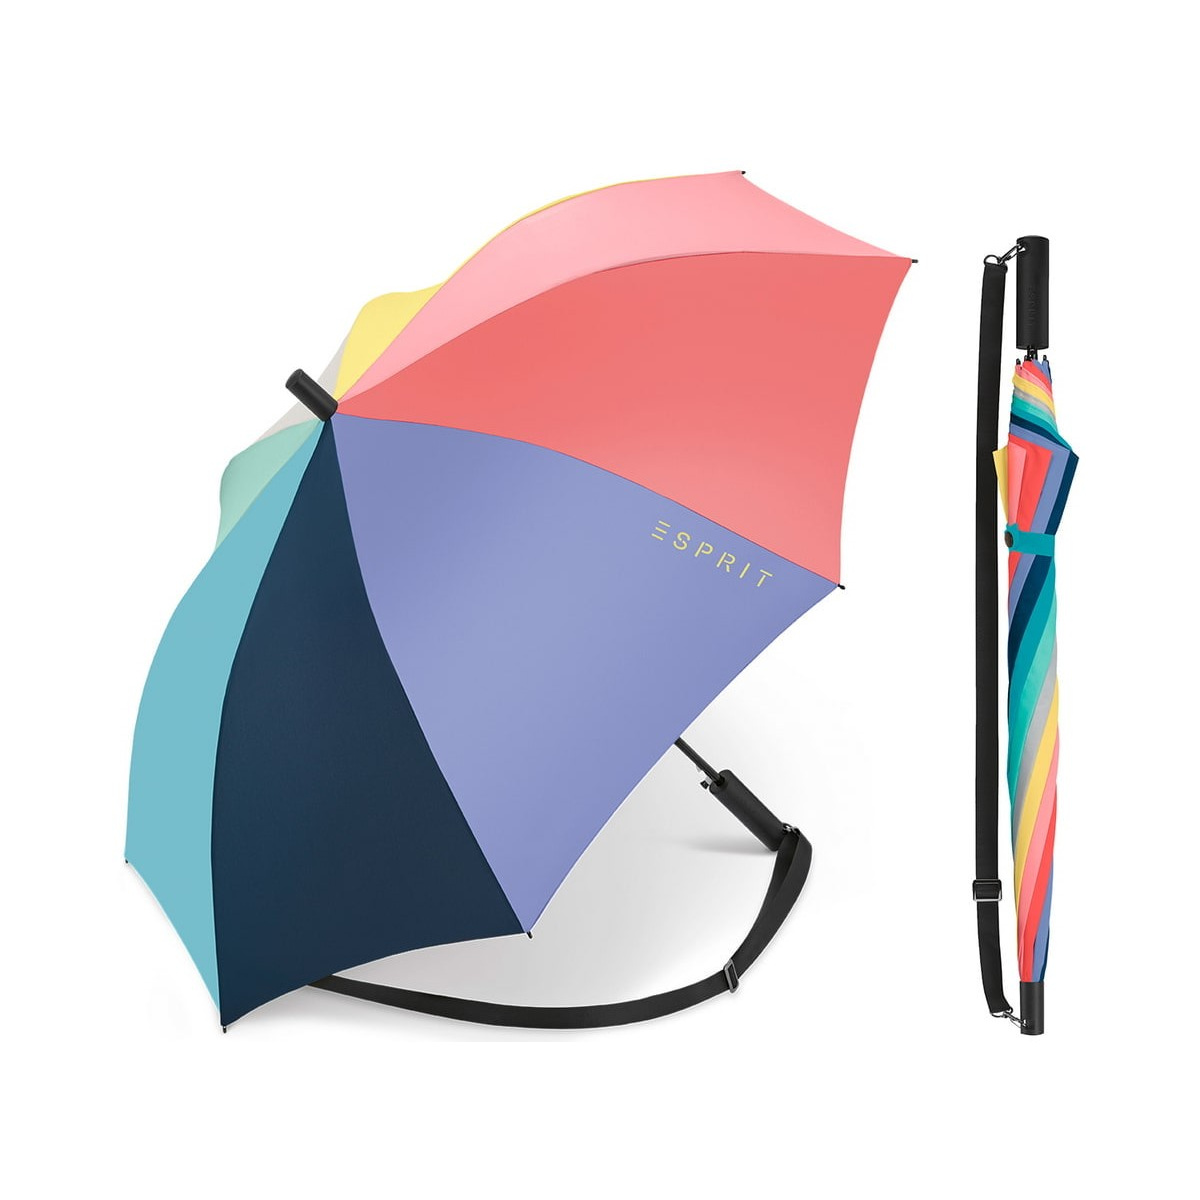 Grand Parapluie Bandoulière Multicolore - Esprit Reference : 12965